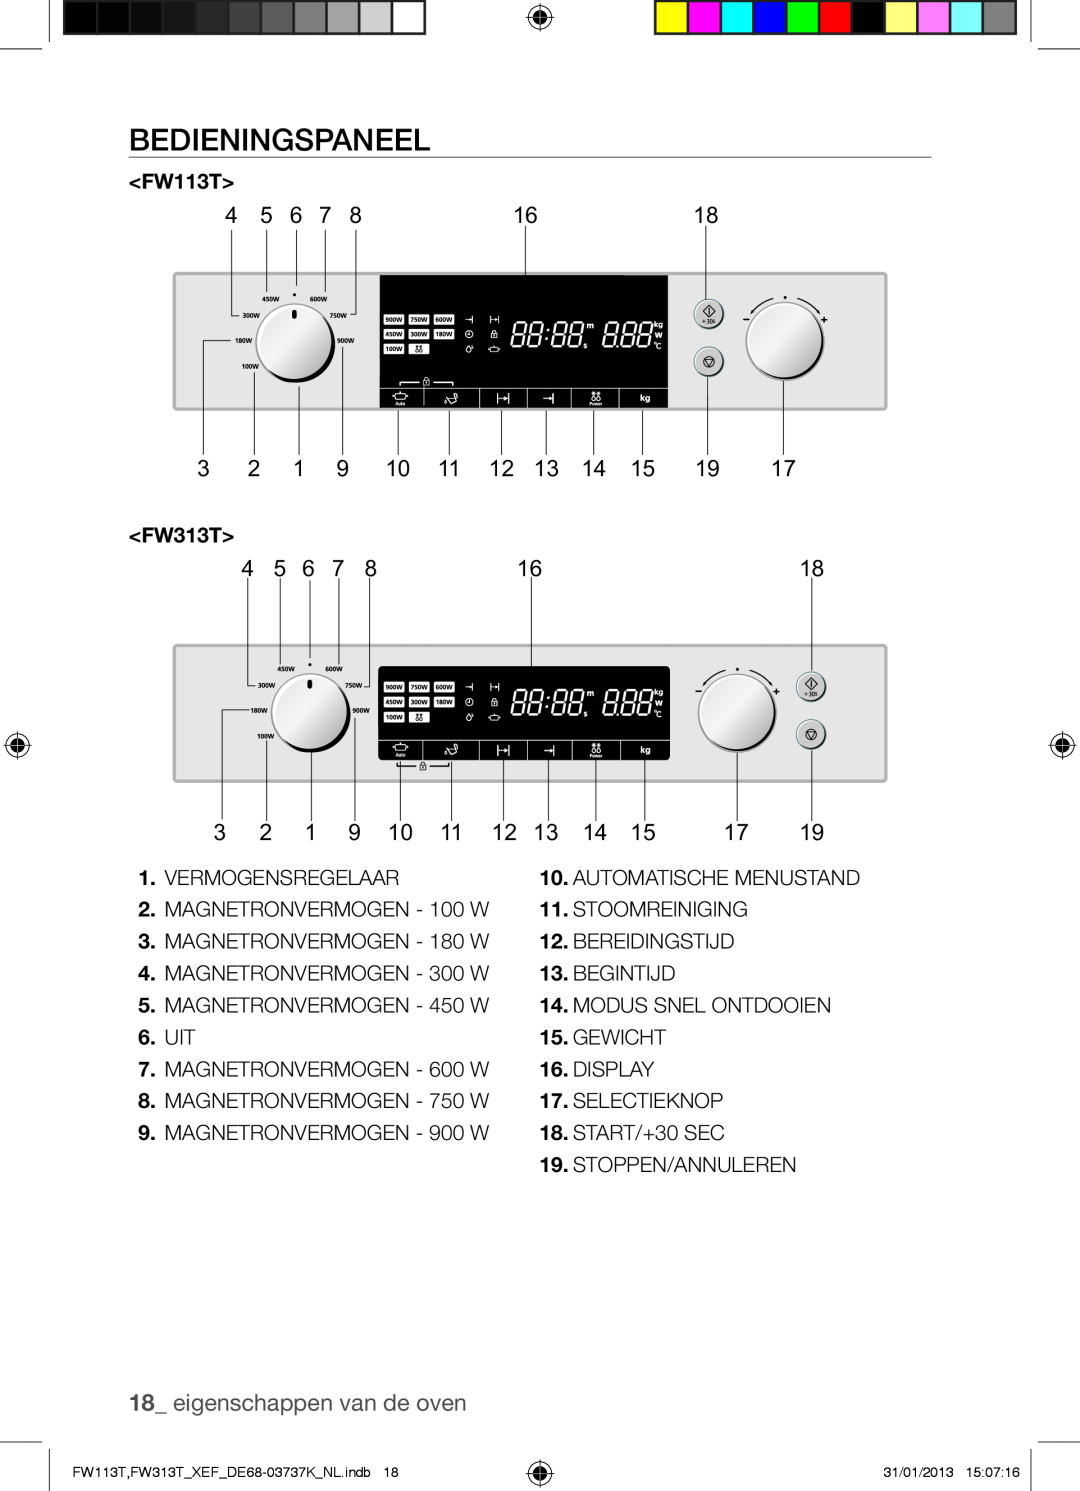 Samsung FW113T002/XEF manual Bedieningspaneel, eigenschappen van de oven 